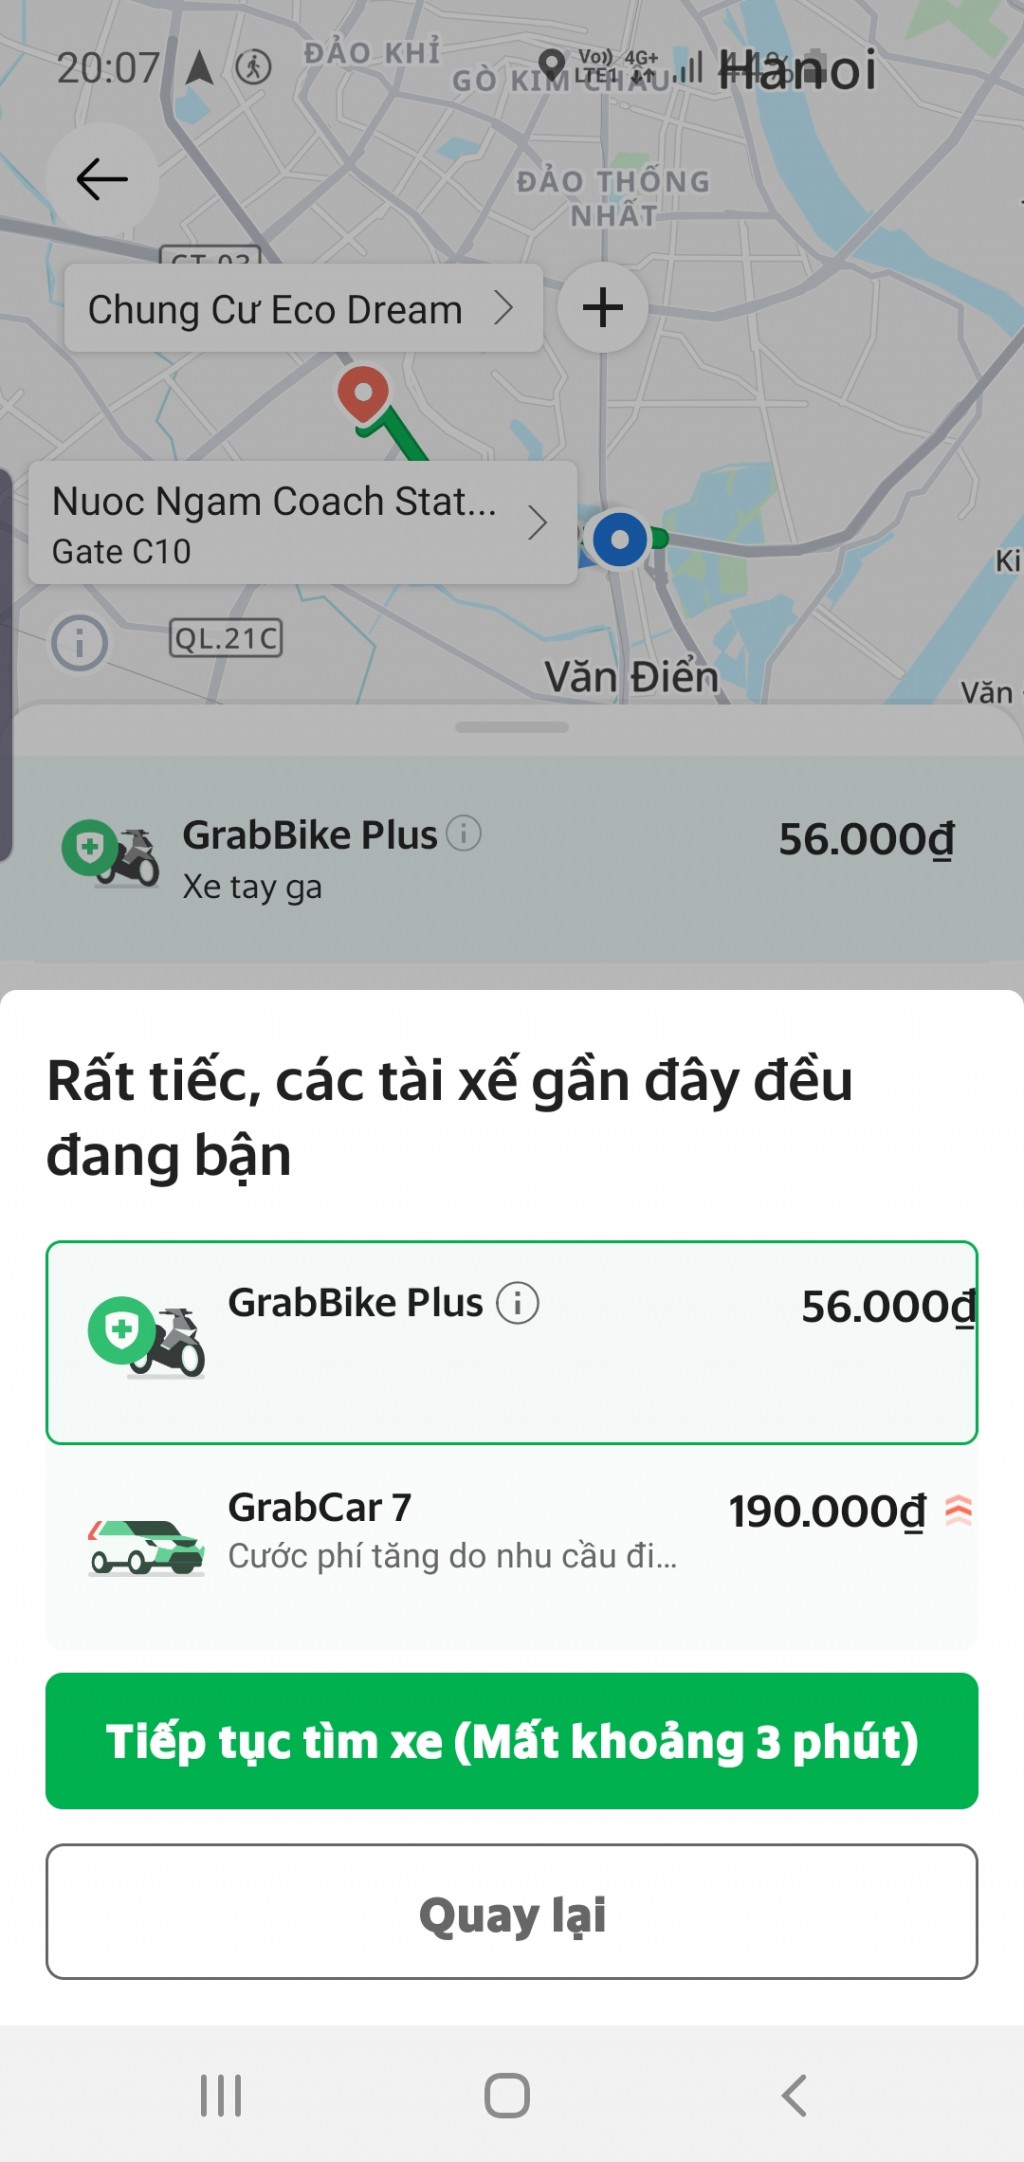 Trở lại Hà Nội sau nghỉ Tết, người dân phát bực vì khó đặt xe qua app